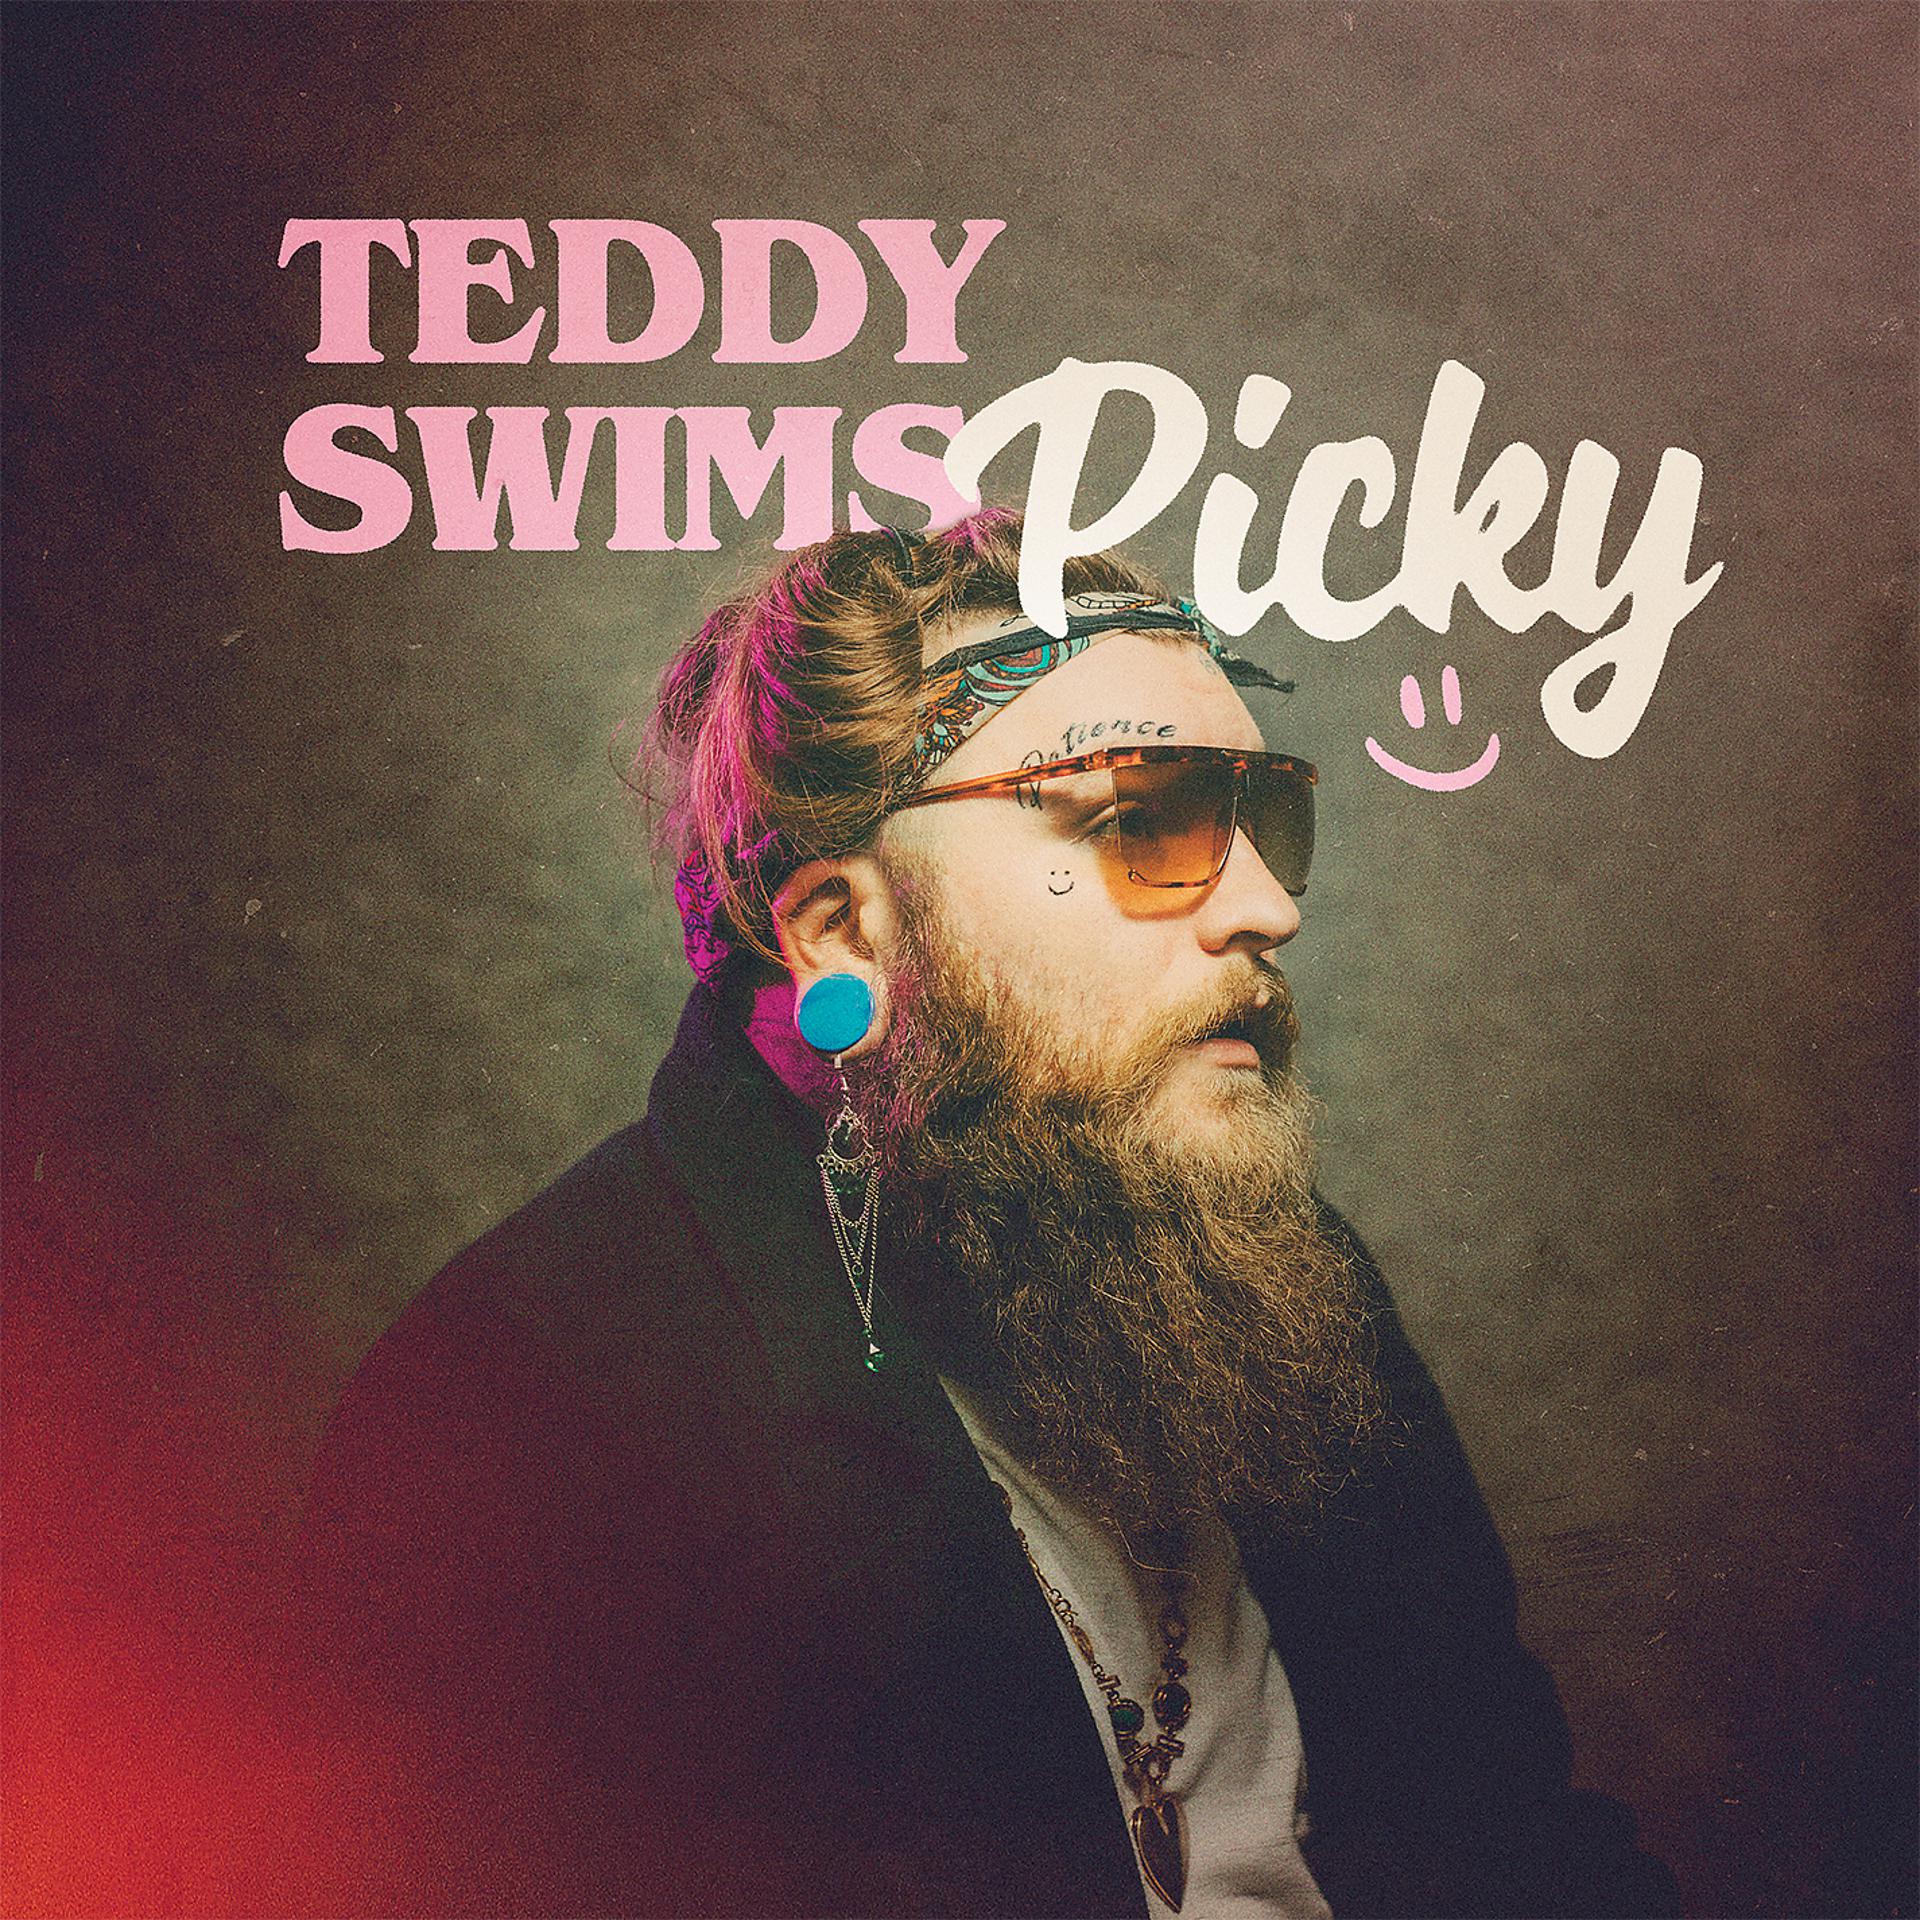 Teddy swims перевод песни lose. Тедди Свимс певец. Teddy Swims обложка. Crazy Teddy Swims. Picky обложка.